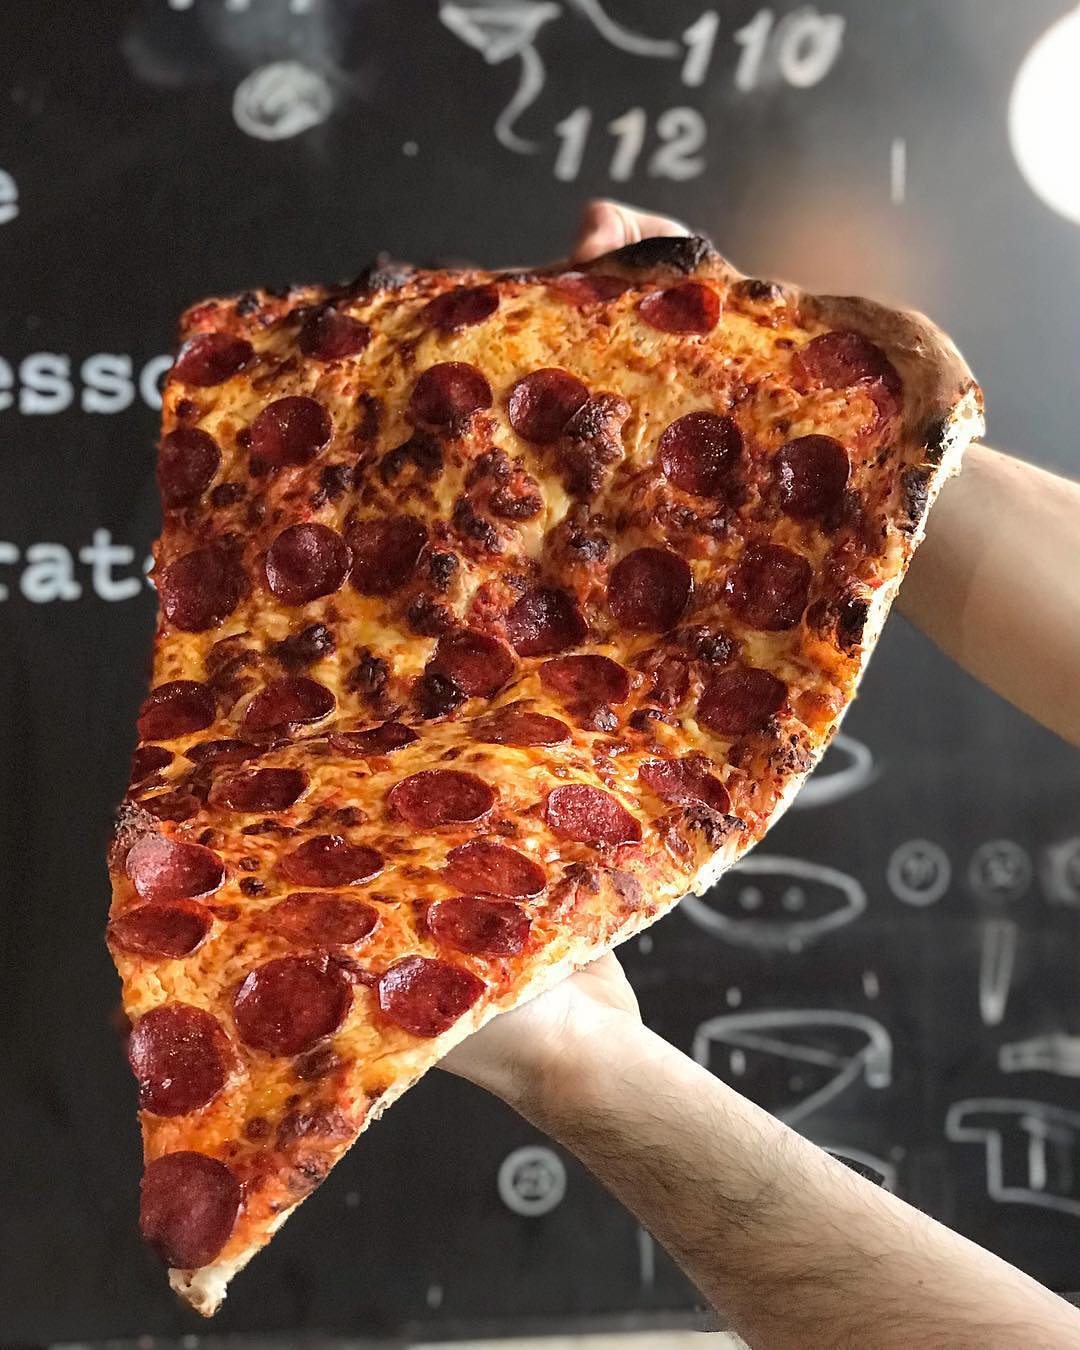 Combinaciones creativas de pizza |  nueva tendencia gastronómica es una porción de pizza gigante: la más grande que hayas visto |  Su belleza